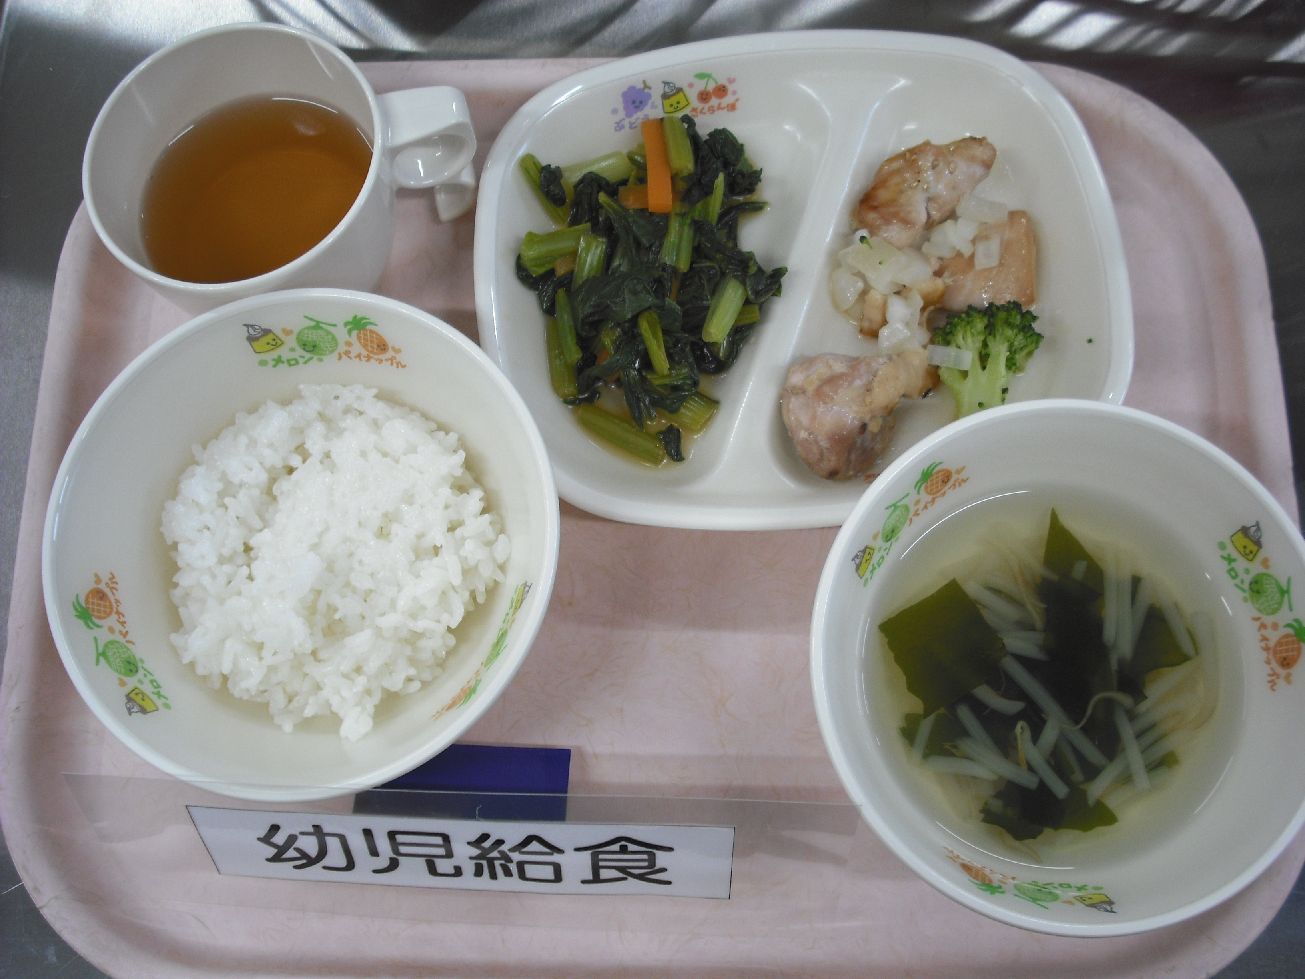 ご飯 中華風ローストチキン 小松菜のナムル わかめスープ